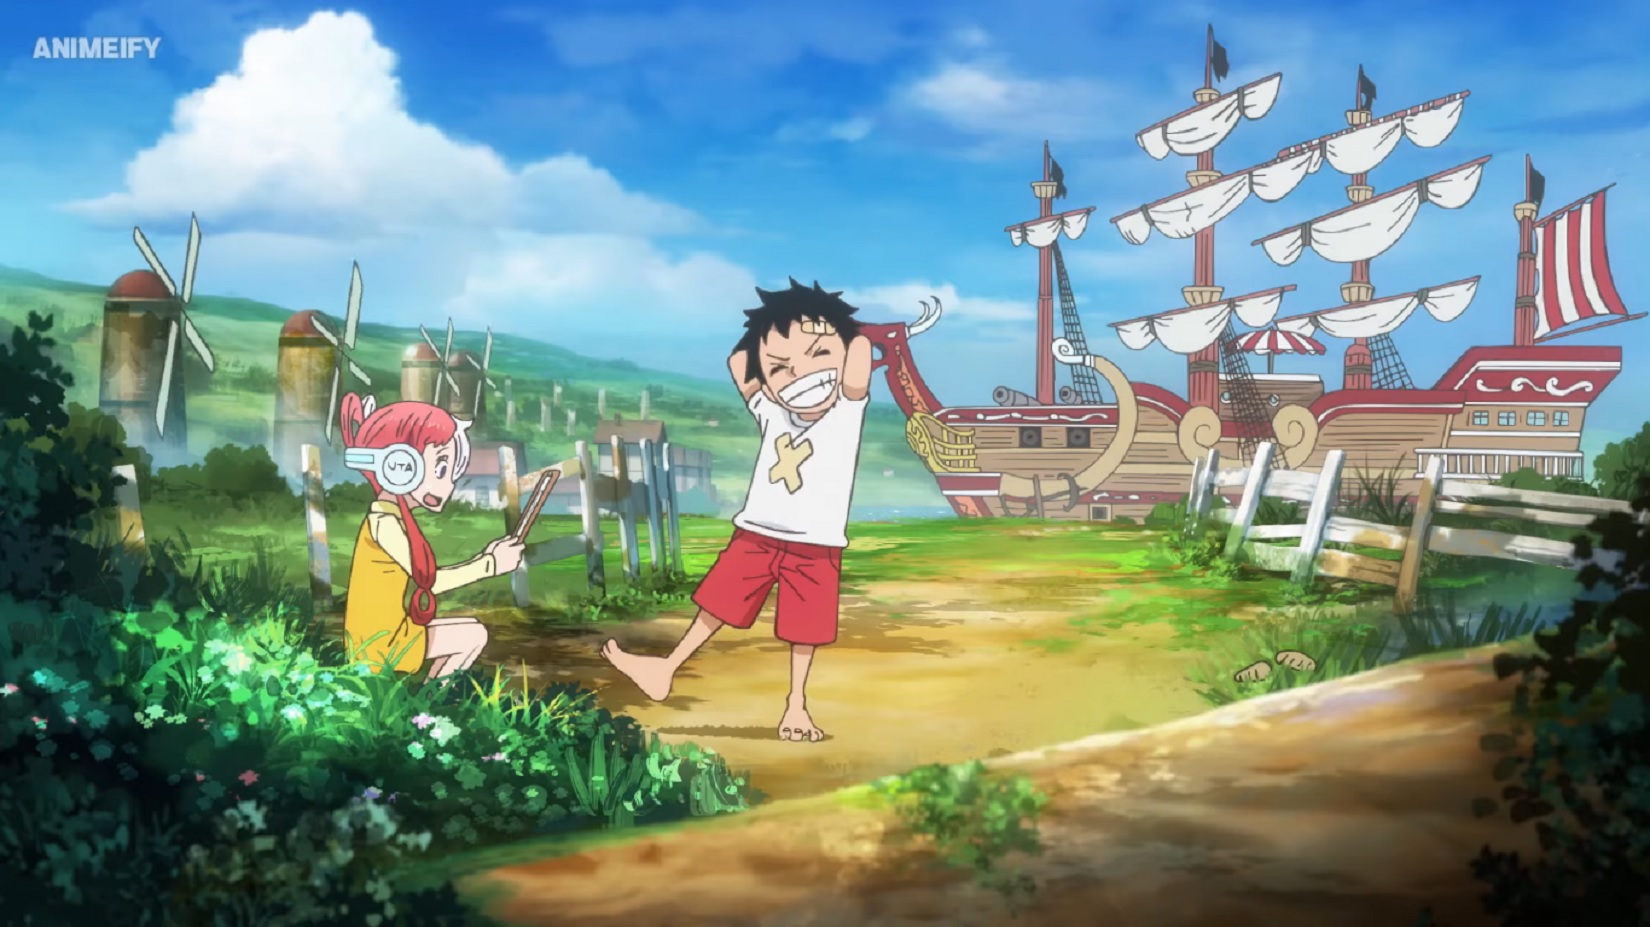 Bộ phim One Piece Movie Red đưa chúng ta vào một hành trình phiêu lưu trong thế giới đầy màu sắc và hấp dẫn của One Piece. Các nhân vật lý tưởng được khai thác tối đa và có sự kết hợp tuyệt vời giữa bối cảnh hoành tráng, âm nhạc đặc sắc và tình tiết hấp dẫn. Chắc chắn sẽ là một trải nghiệm đáng nhớ cho các fan của One Piece.